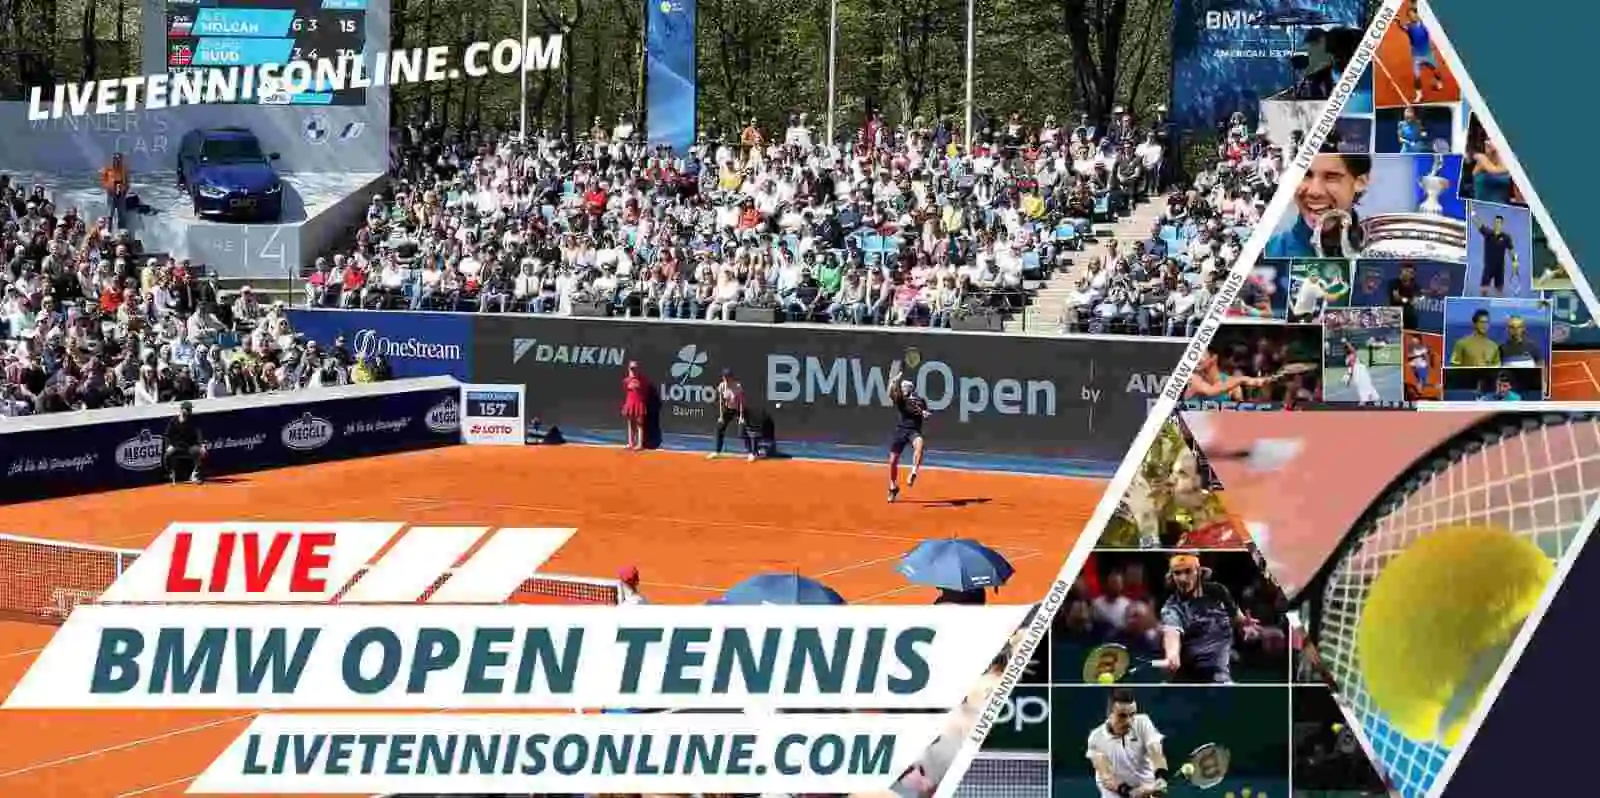 bmw-open-tennis-live-stream